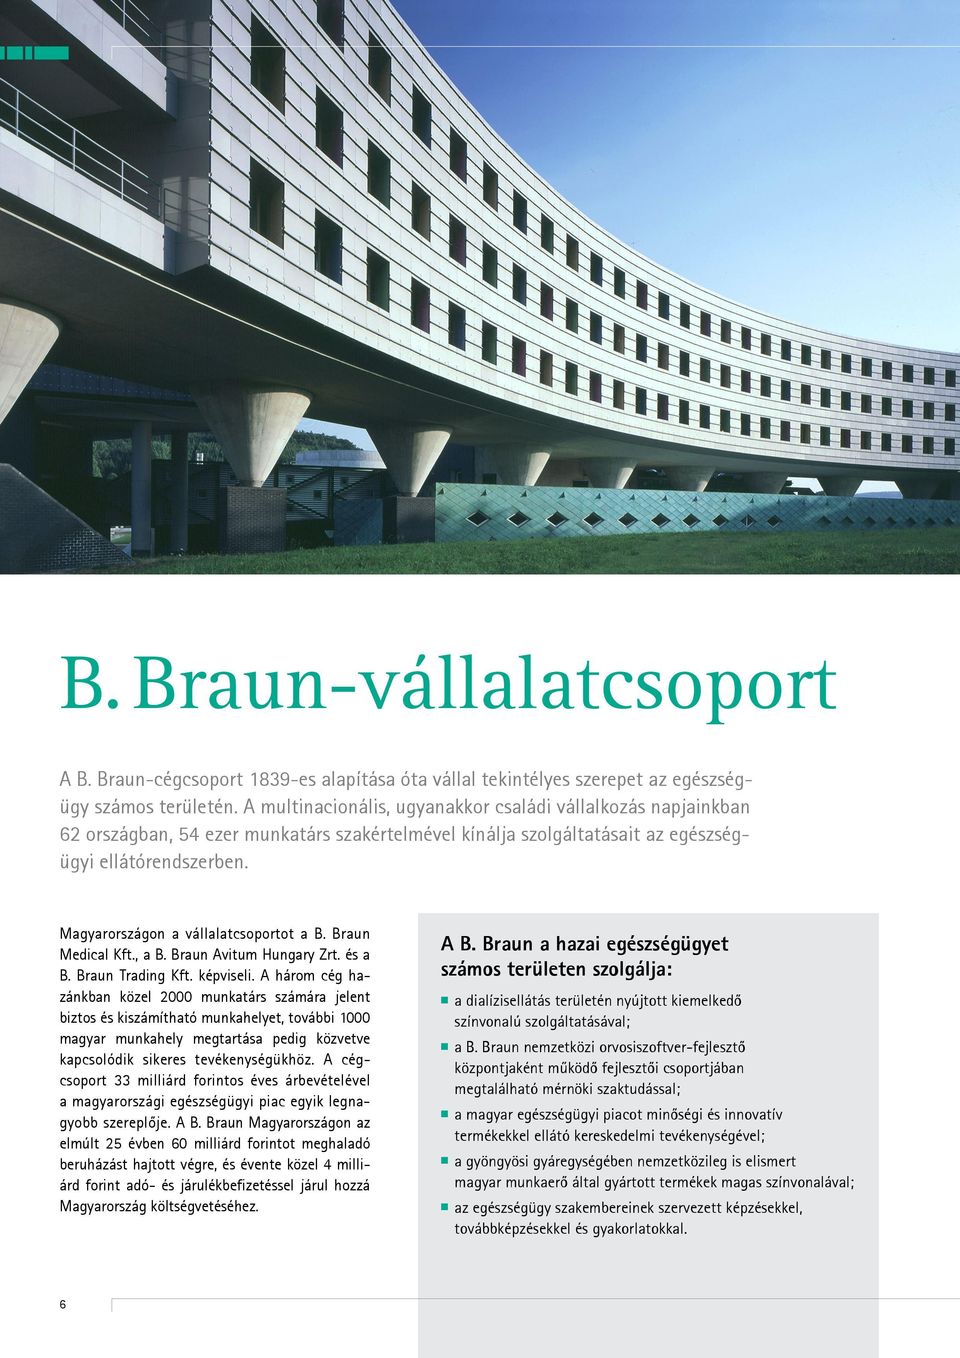 Magyarországon a vállalatcsoportot a B. Braun Medical Kft., a B. Braun Avitum Hungary Zrt. és a B. Braun Trading Kft. képviseli.